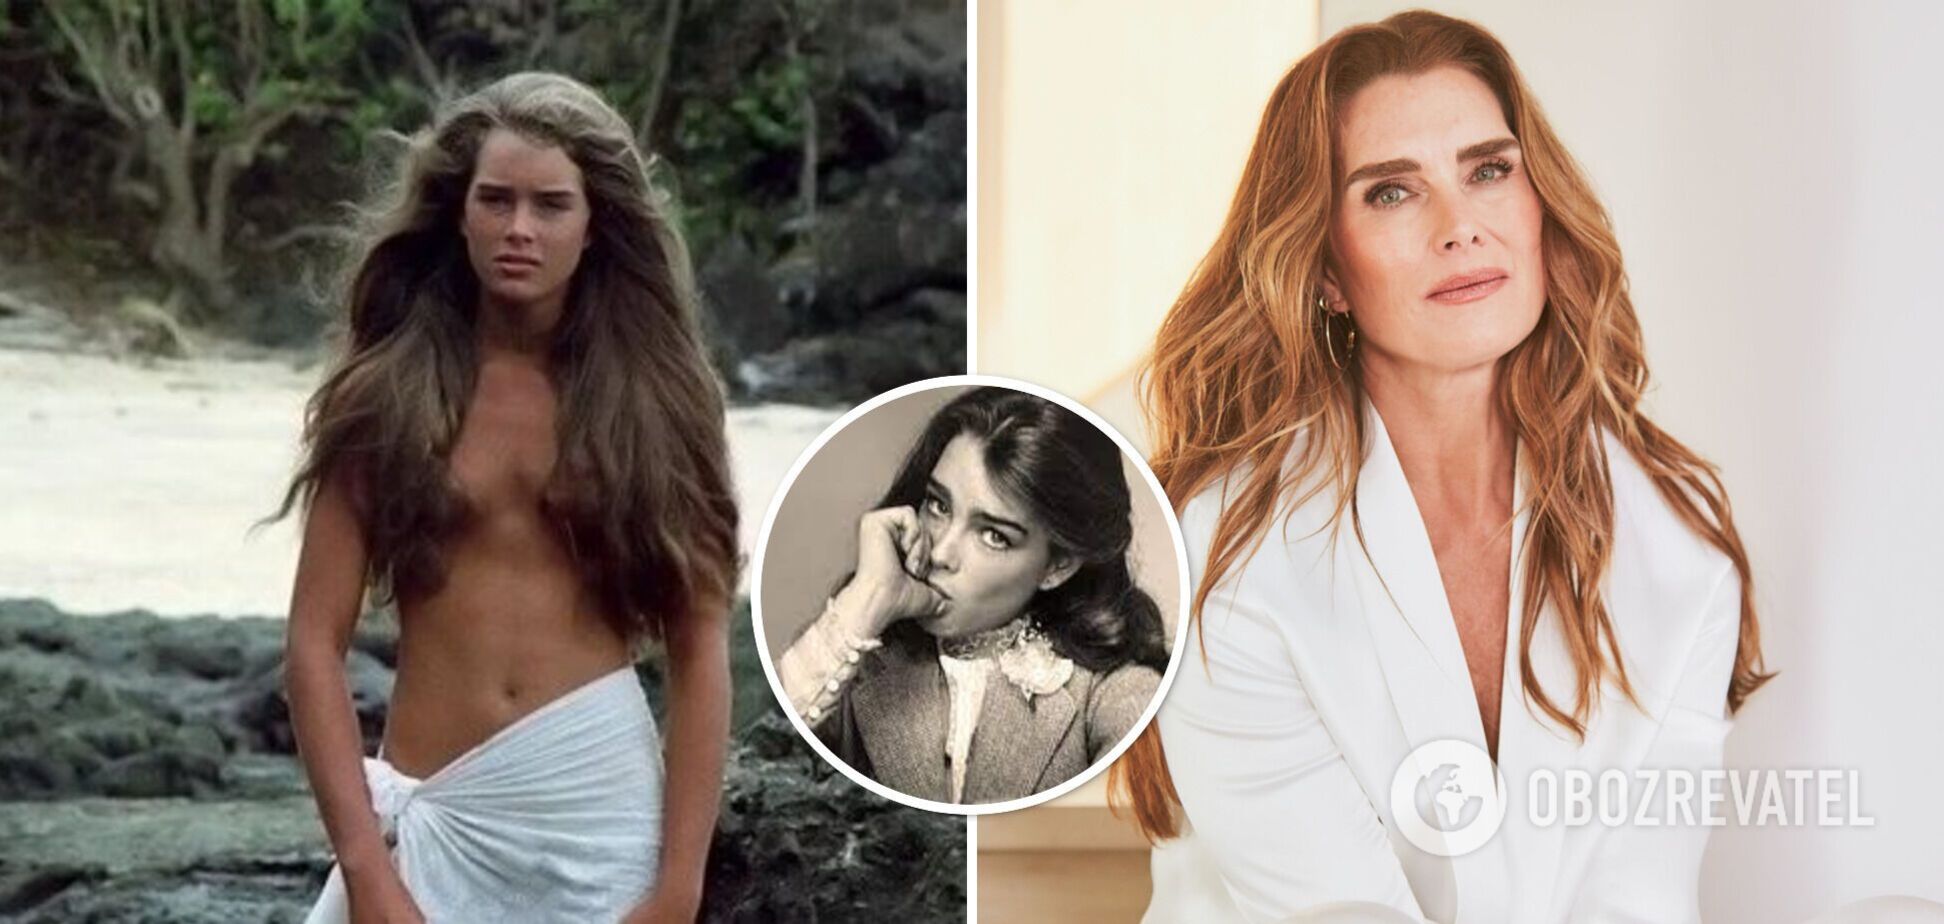 'В 10 позировала для Playboy, в 11 — играла проститутку': Брук Шилдс обвинила мать в том, что она заставляла сниматься ее голой